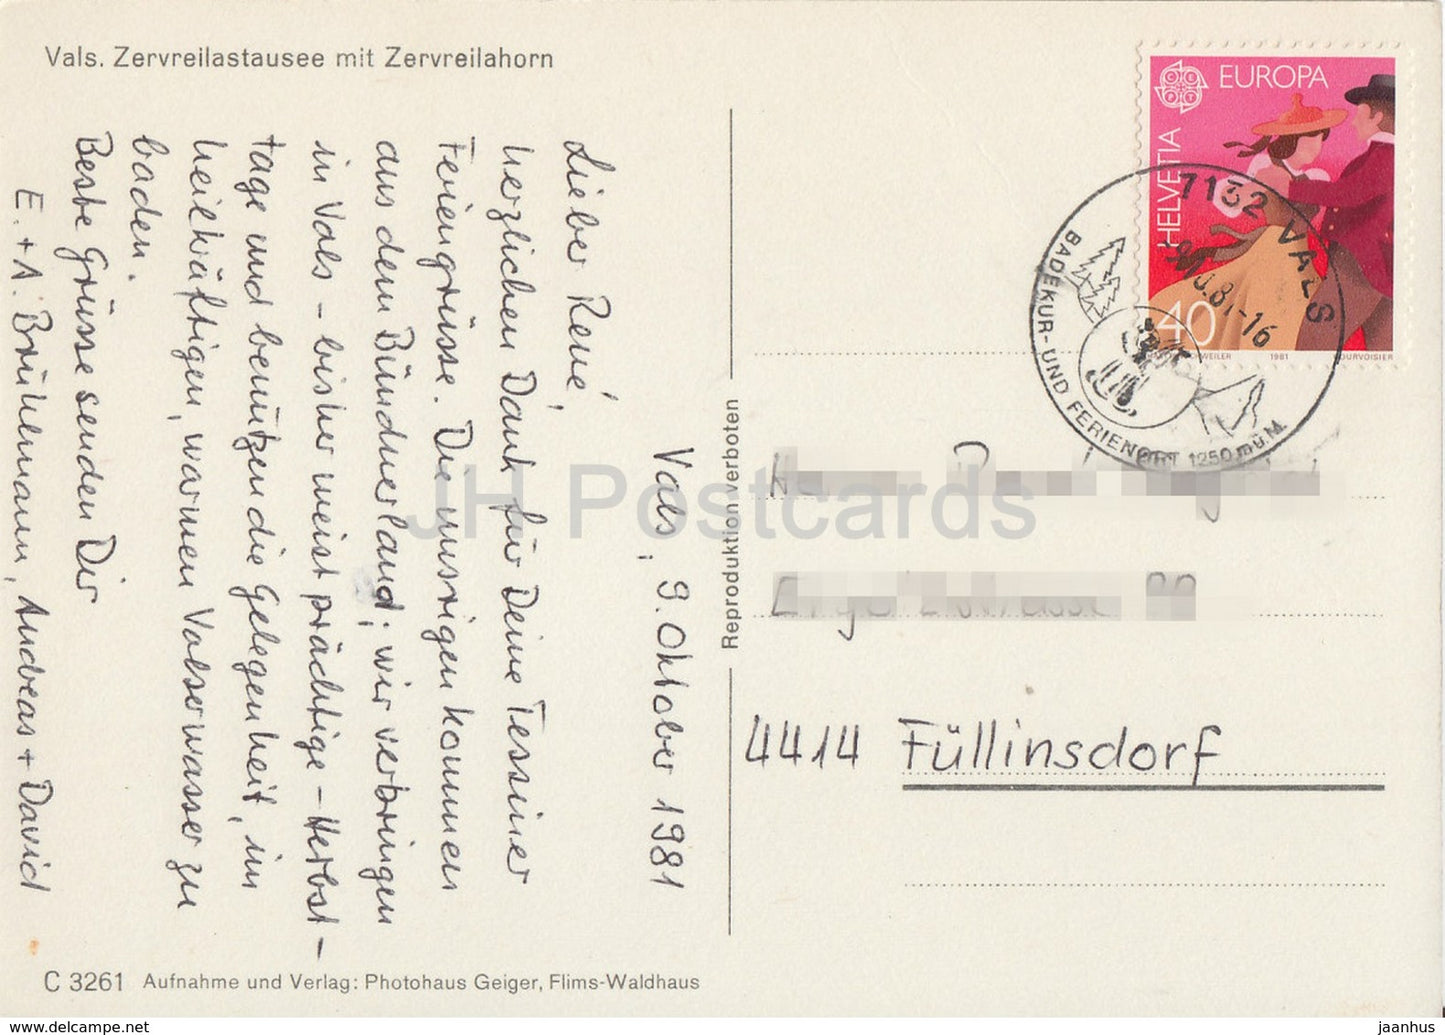 Vals - Zervreilastausee mit Zervreilahorn - 1981 - Schweiz - gebraucht